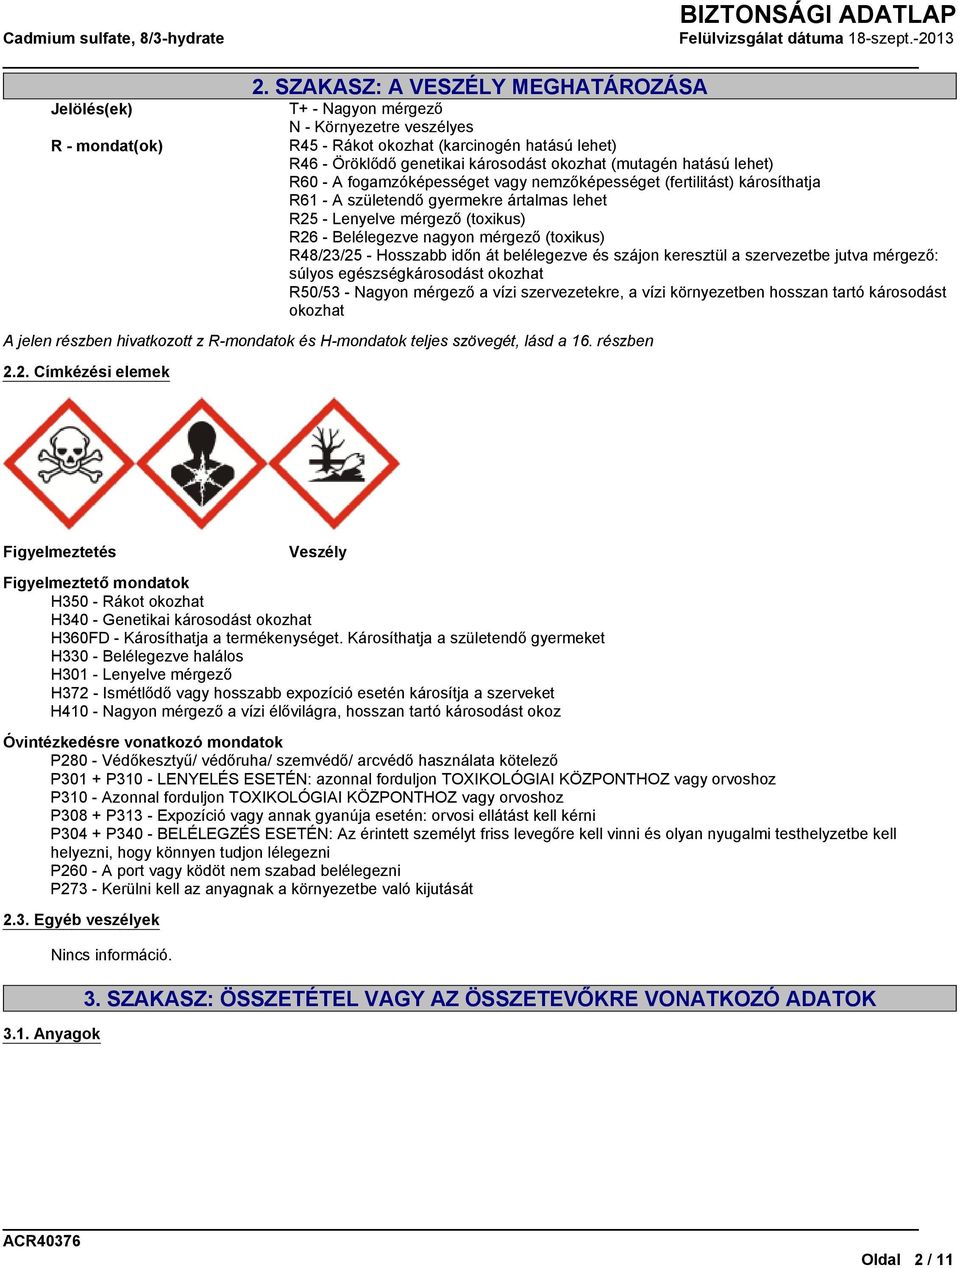 mérgező (toxikus) R48/23/25 - Hosszabb időn át belélegezve és szájon keresztül a szervezetbe jutva mérgező: súlyos egészségkárosodást okozhat R50/53 - Nagyon mérgező a vízi szervezetekre, a vízi